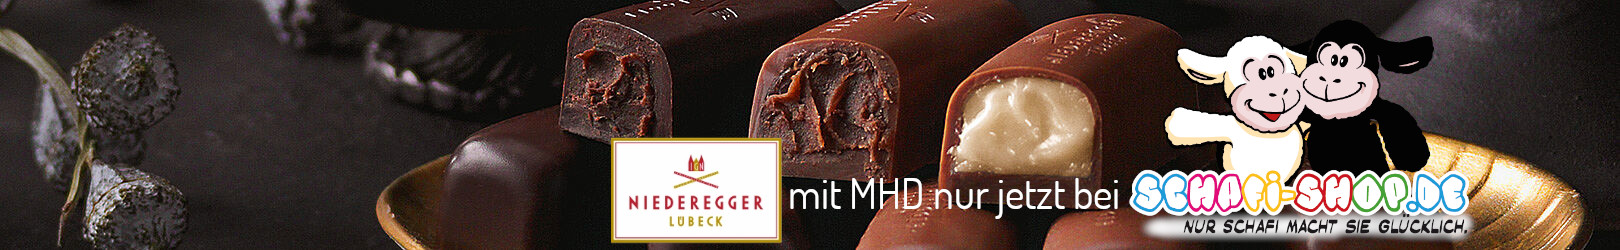 Banner Niederegger Chocolates de oveja